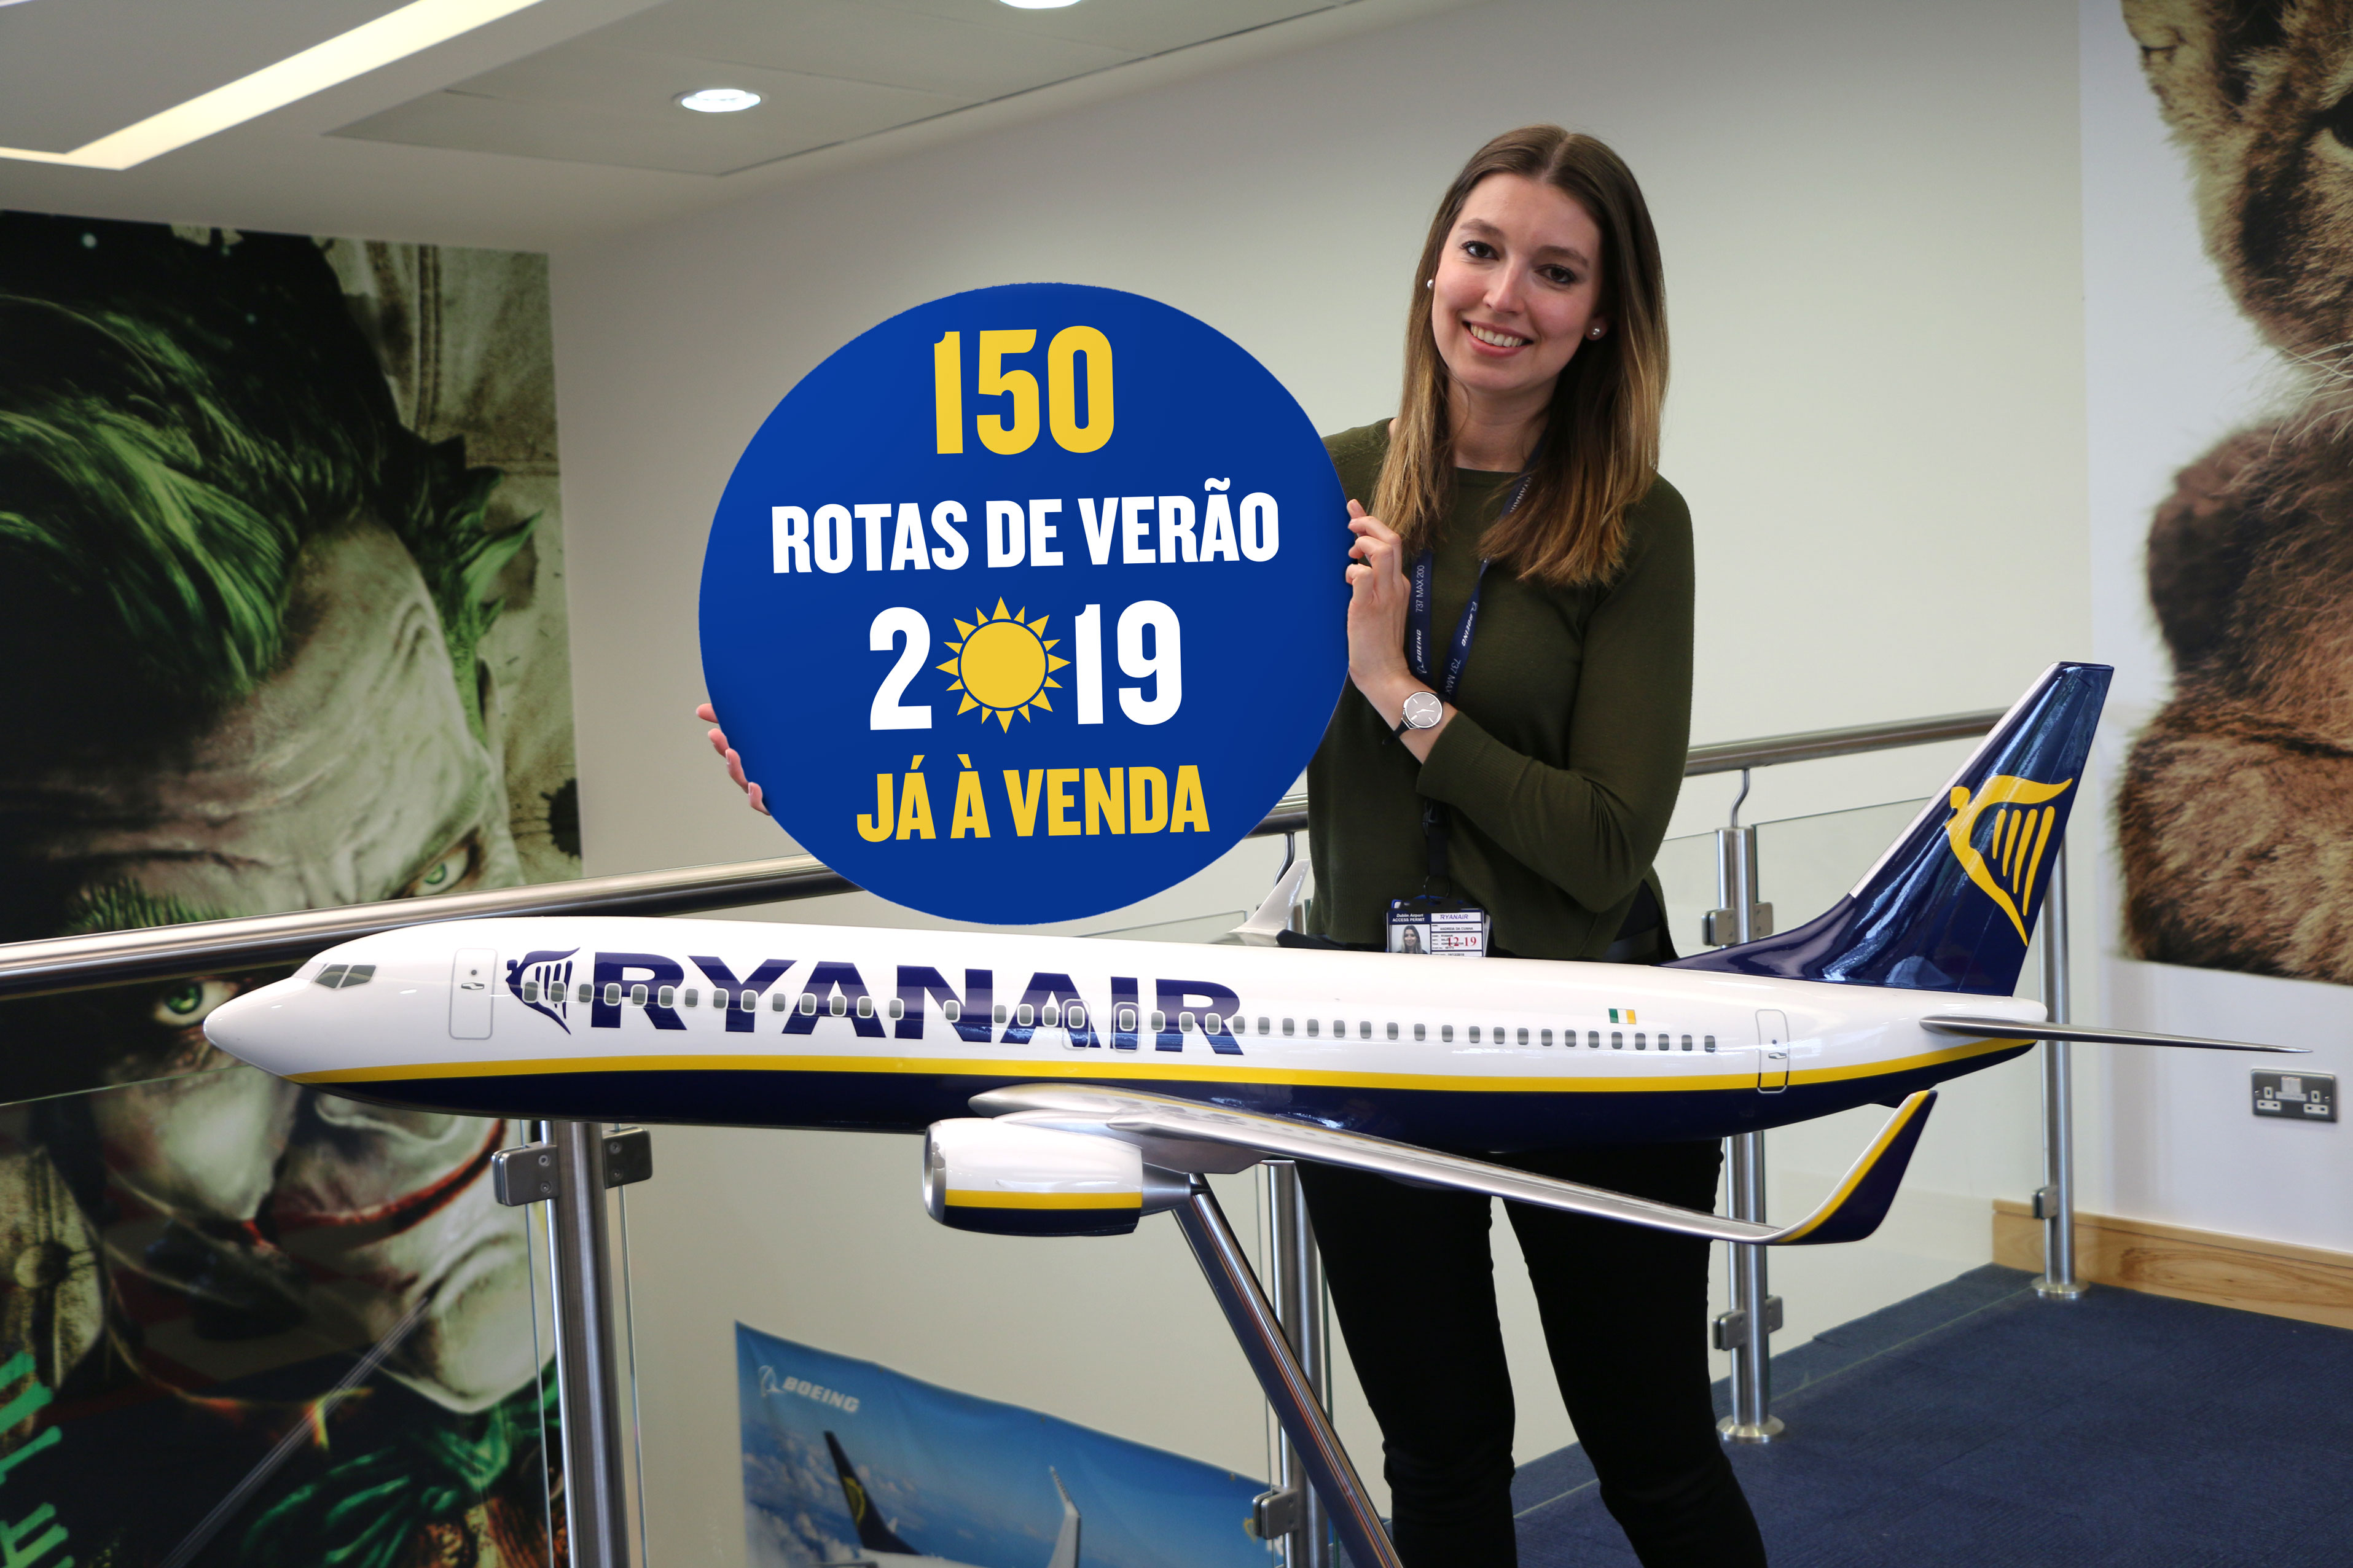 Ryanair Lança O Horário De Verão 2019 Com A Maior Antecedência De Sempre